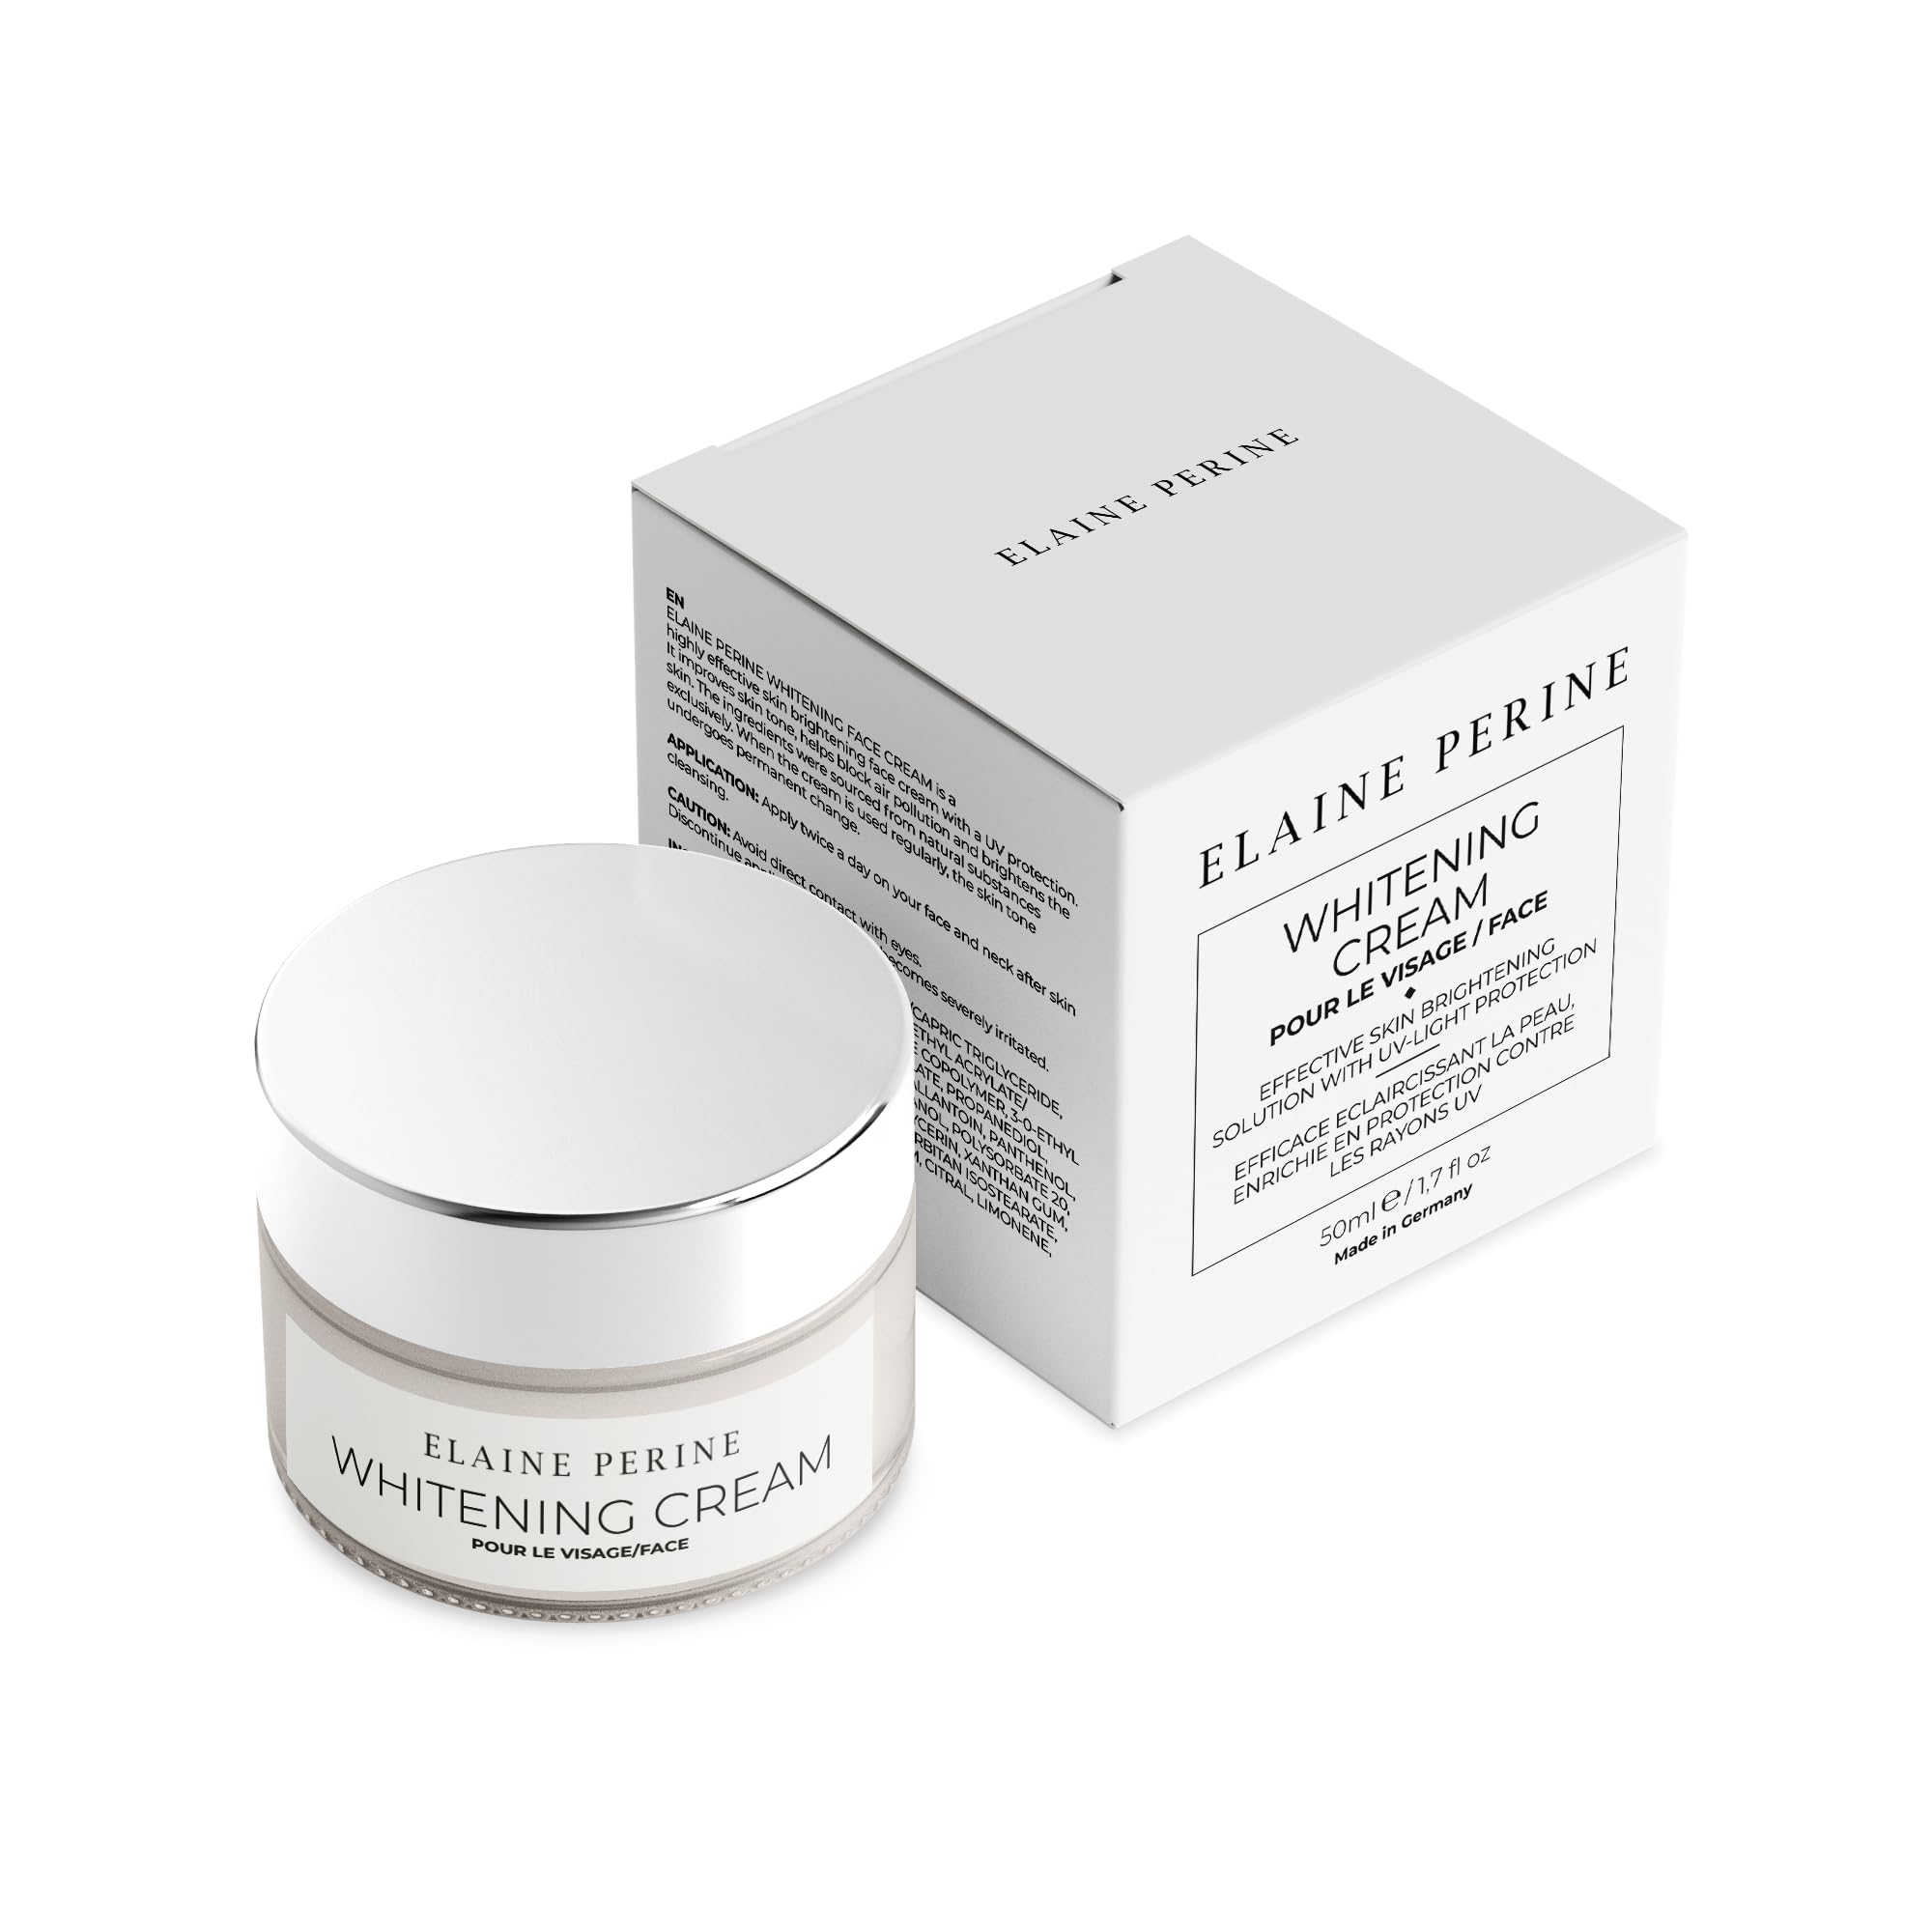 Whitening Cream Face - Aufhellungscreme Gesicht mit UV-Schutz für gleichmässigen Teint (50ml) von Elaine Perine™ | 𝗠𝗔𝗗𝗘 𝗜𝗡 𝗚𝗘𝗥𝗠𝗔𝗡𝗬